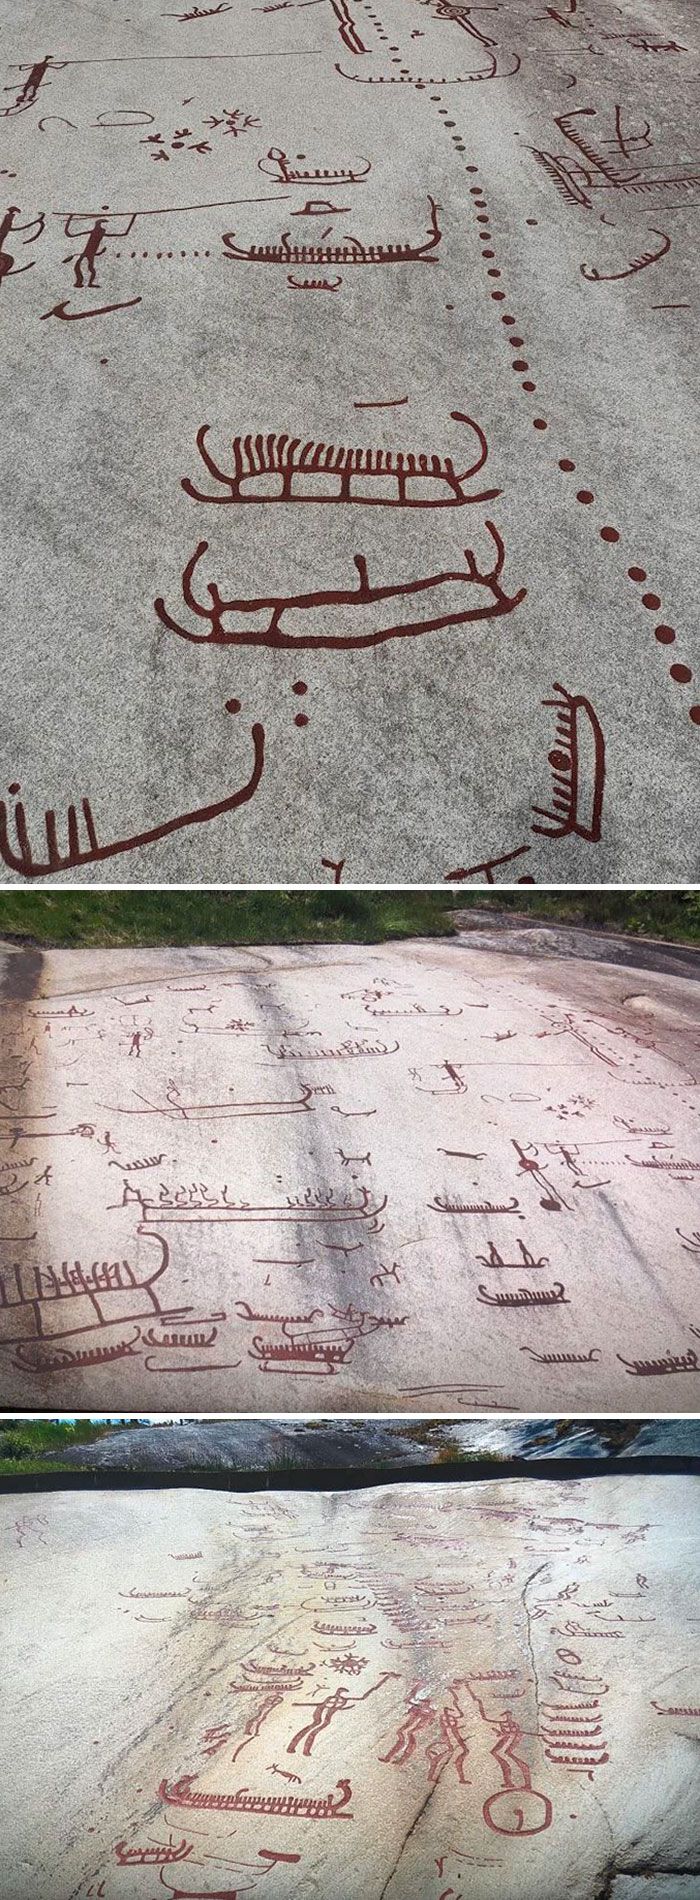 Des pétroglyphes vieux de 3 500 ans découverts à Tanum, en Suède. Certaines des sculptures représentent des bateaux, des animaux, des personnes et des créatures mythologiques.